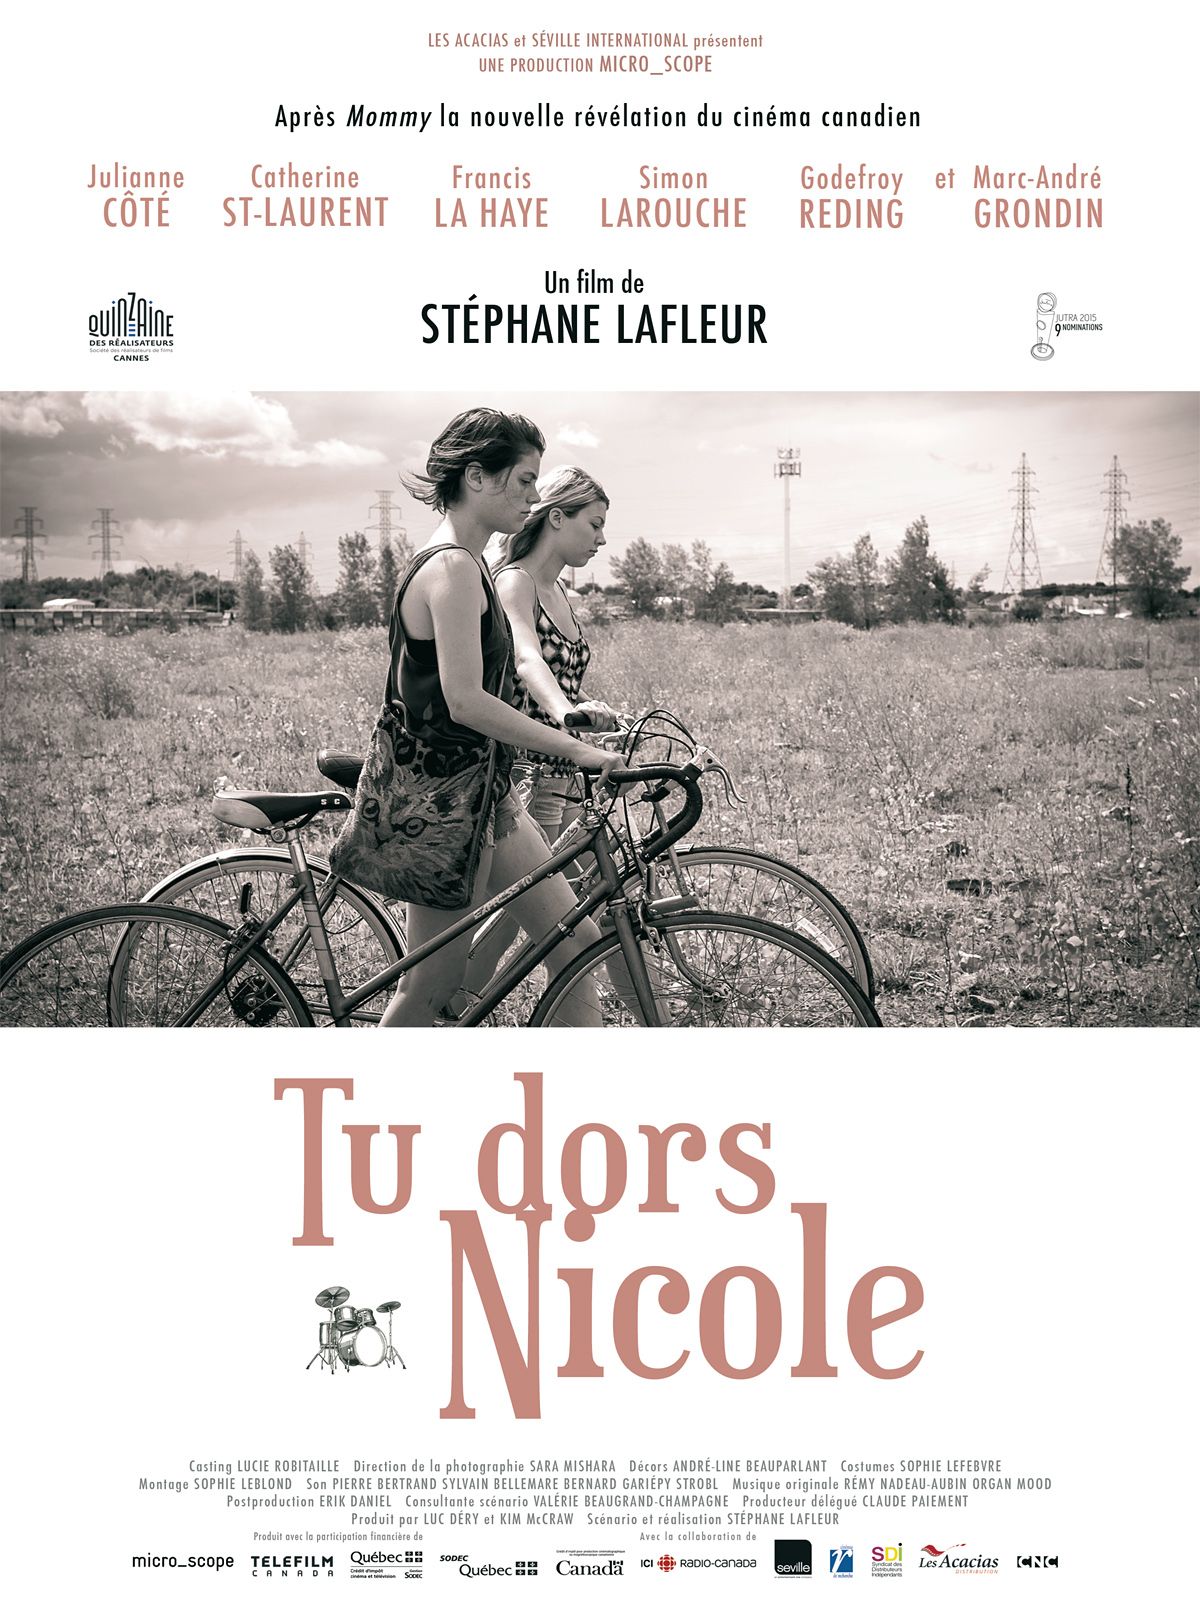 Tu Dors Nicole (2014) - IMDb